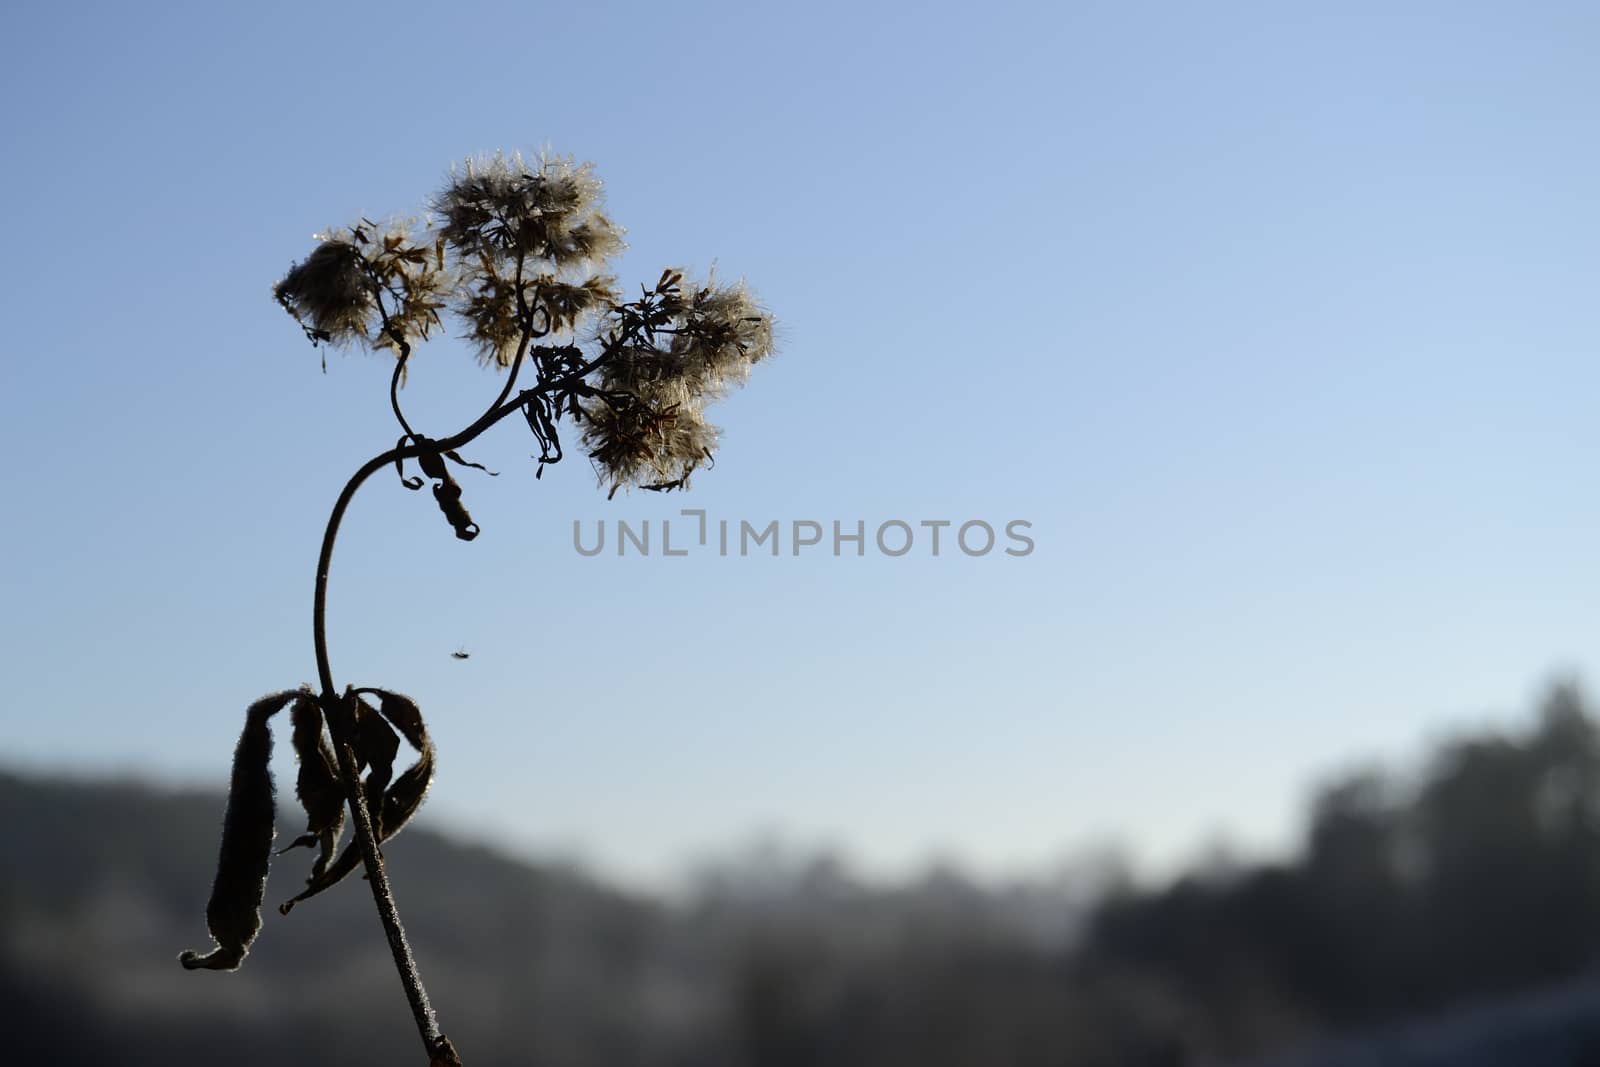 frozen flower, sky in background by ncuisinier